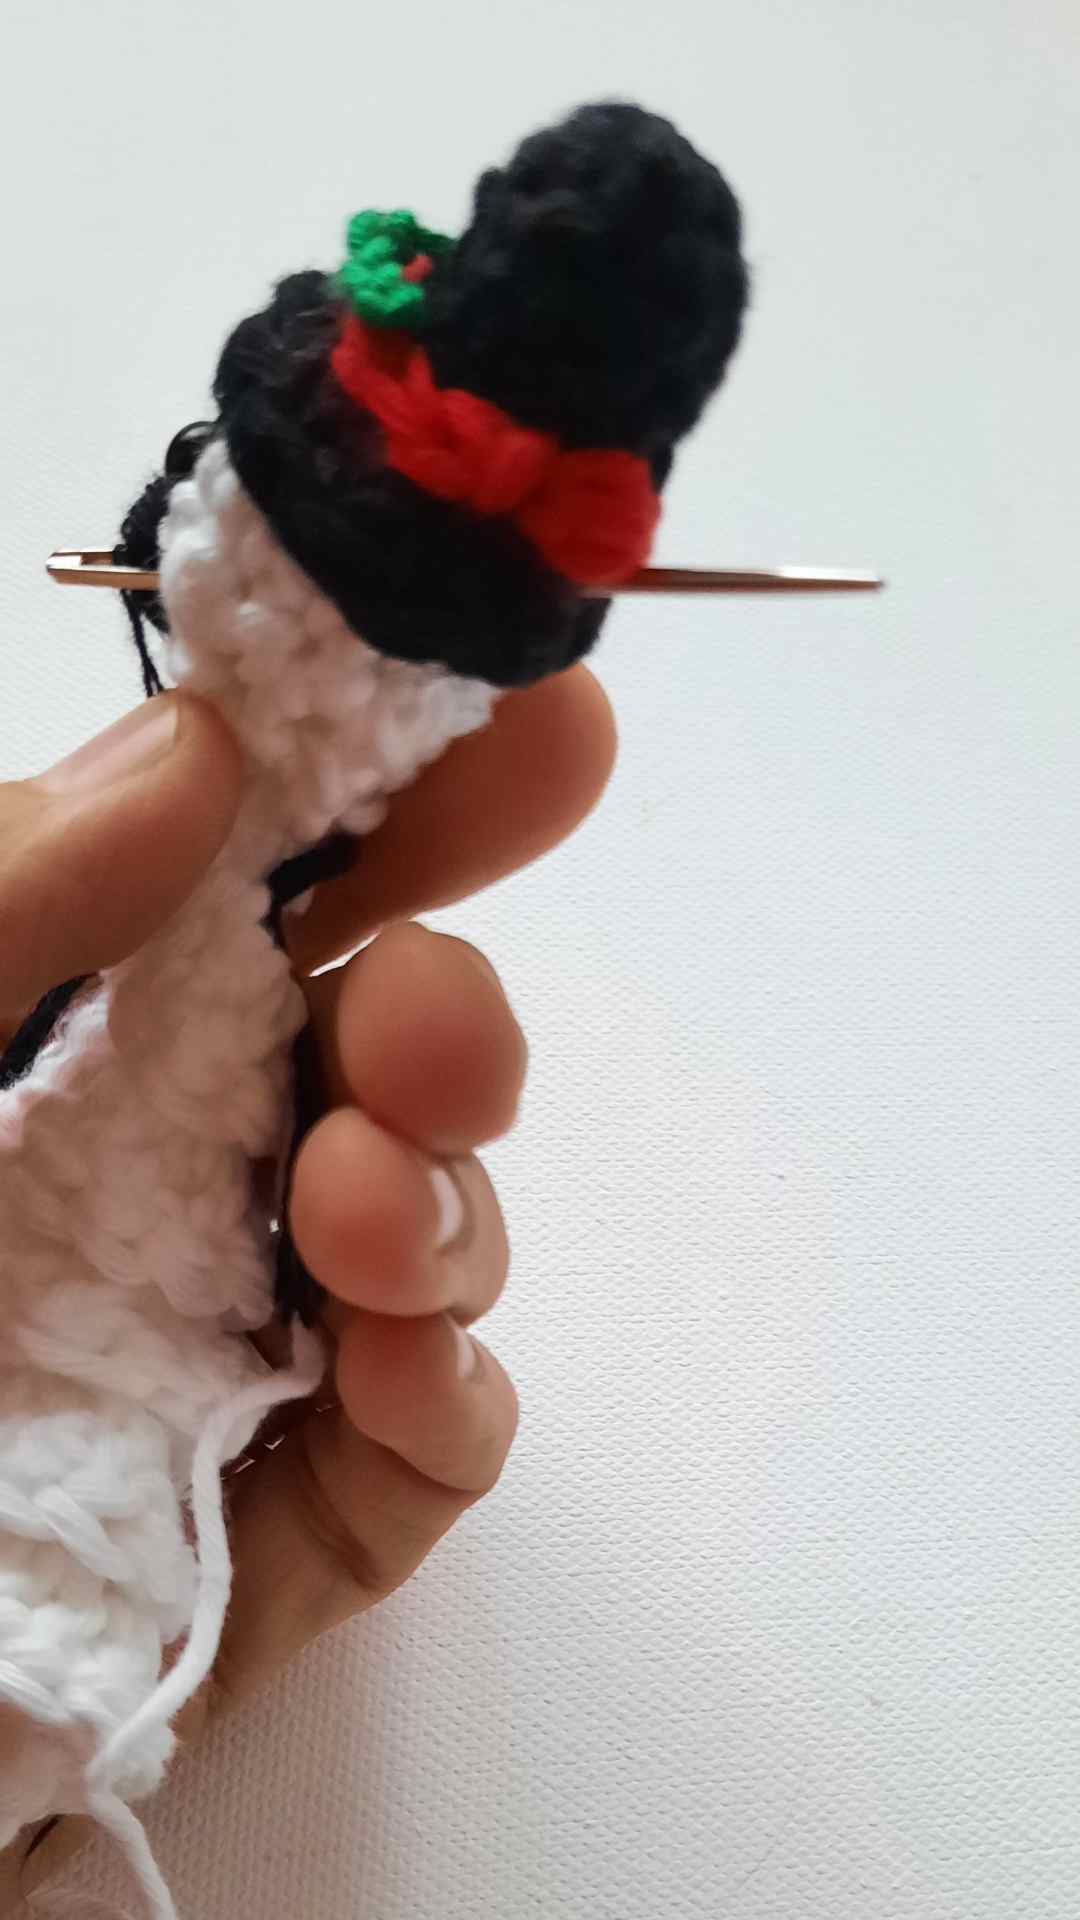 Crochet Snowman Free Pattern